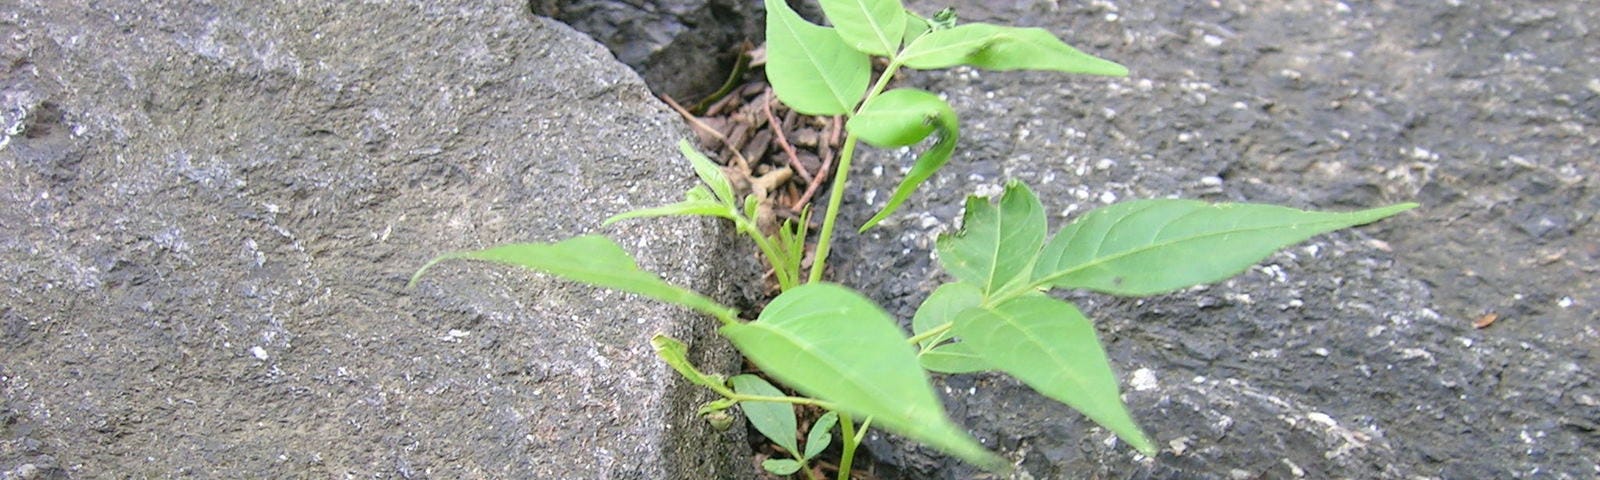 A sapling growing through rock crevices.